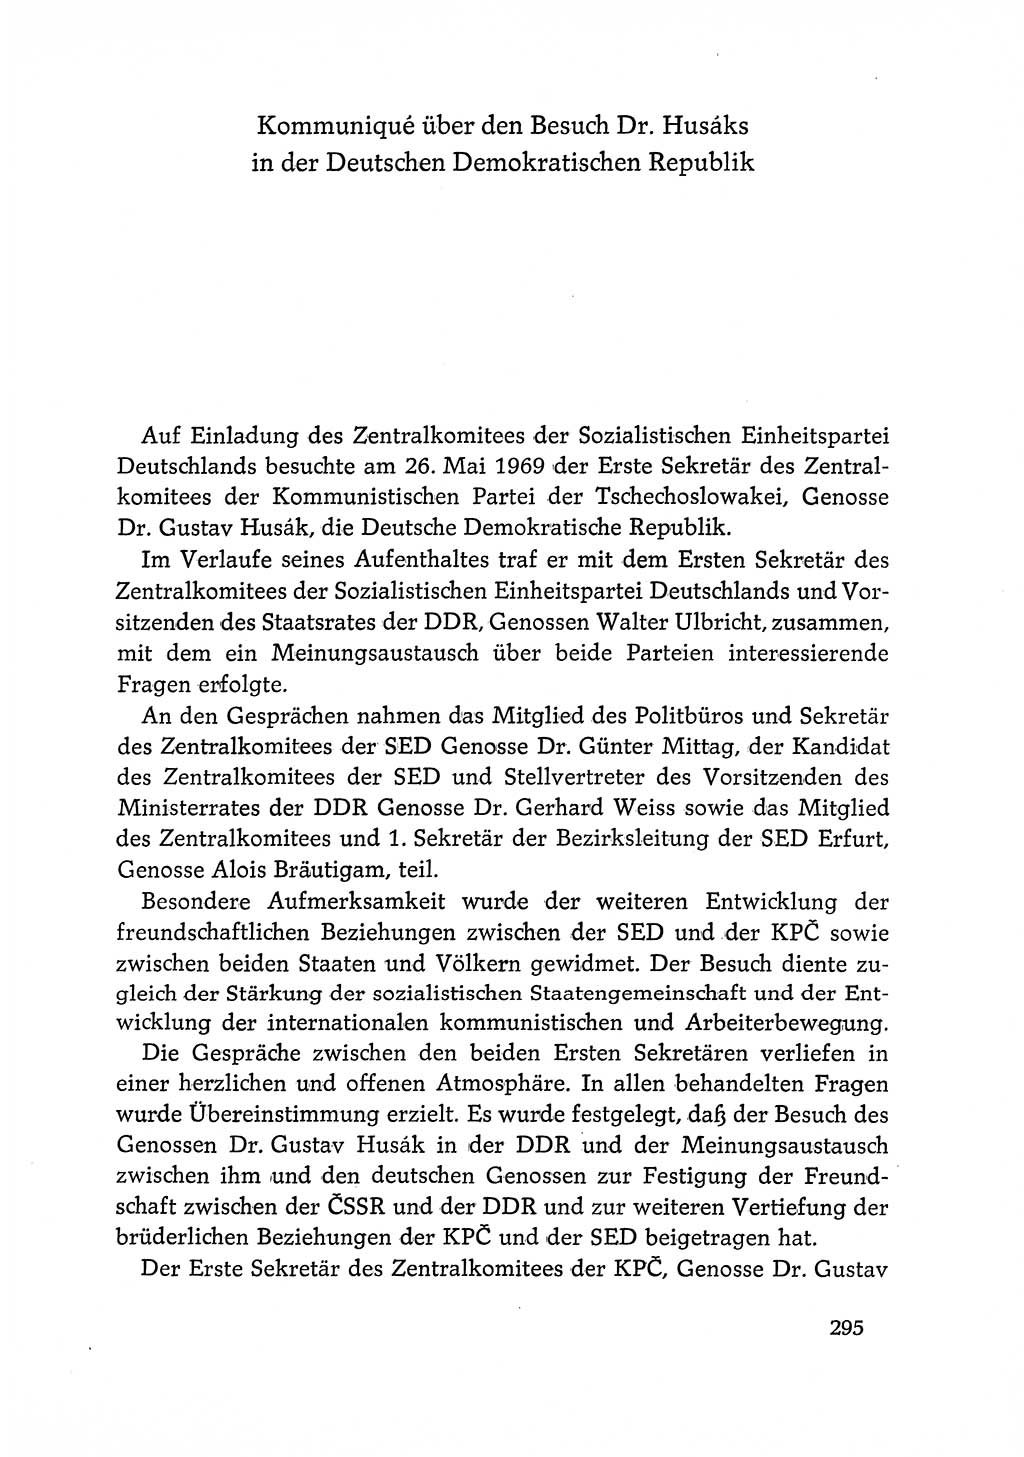 Dokumente der Sozialistischen Einheitspartei Deutschlands (SED) [Deutsche Demokratische Republik (DDR)] 1968-1969, Seite 295 (Dok. SED DDR 1968-1969, S. 295)